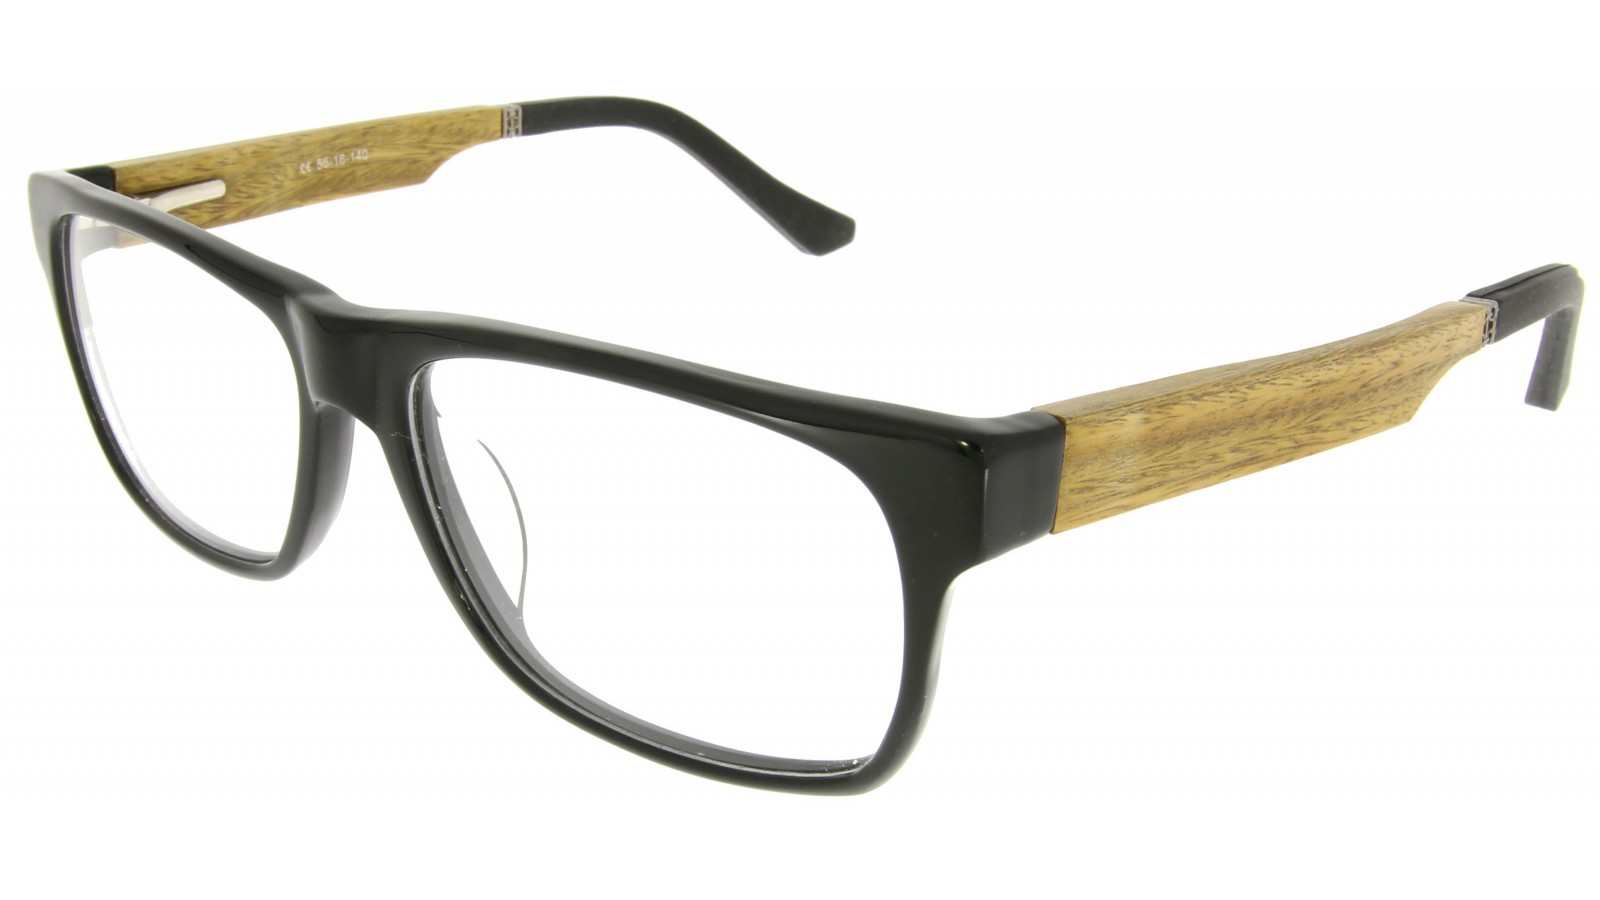 Schwarz-beige Brille mit Bügeln in Holzoptik